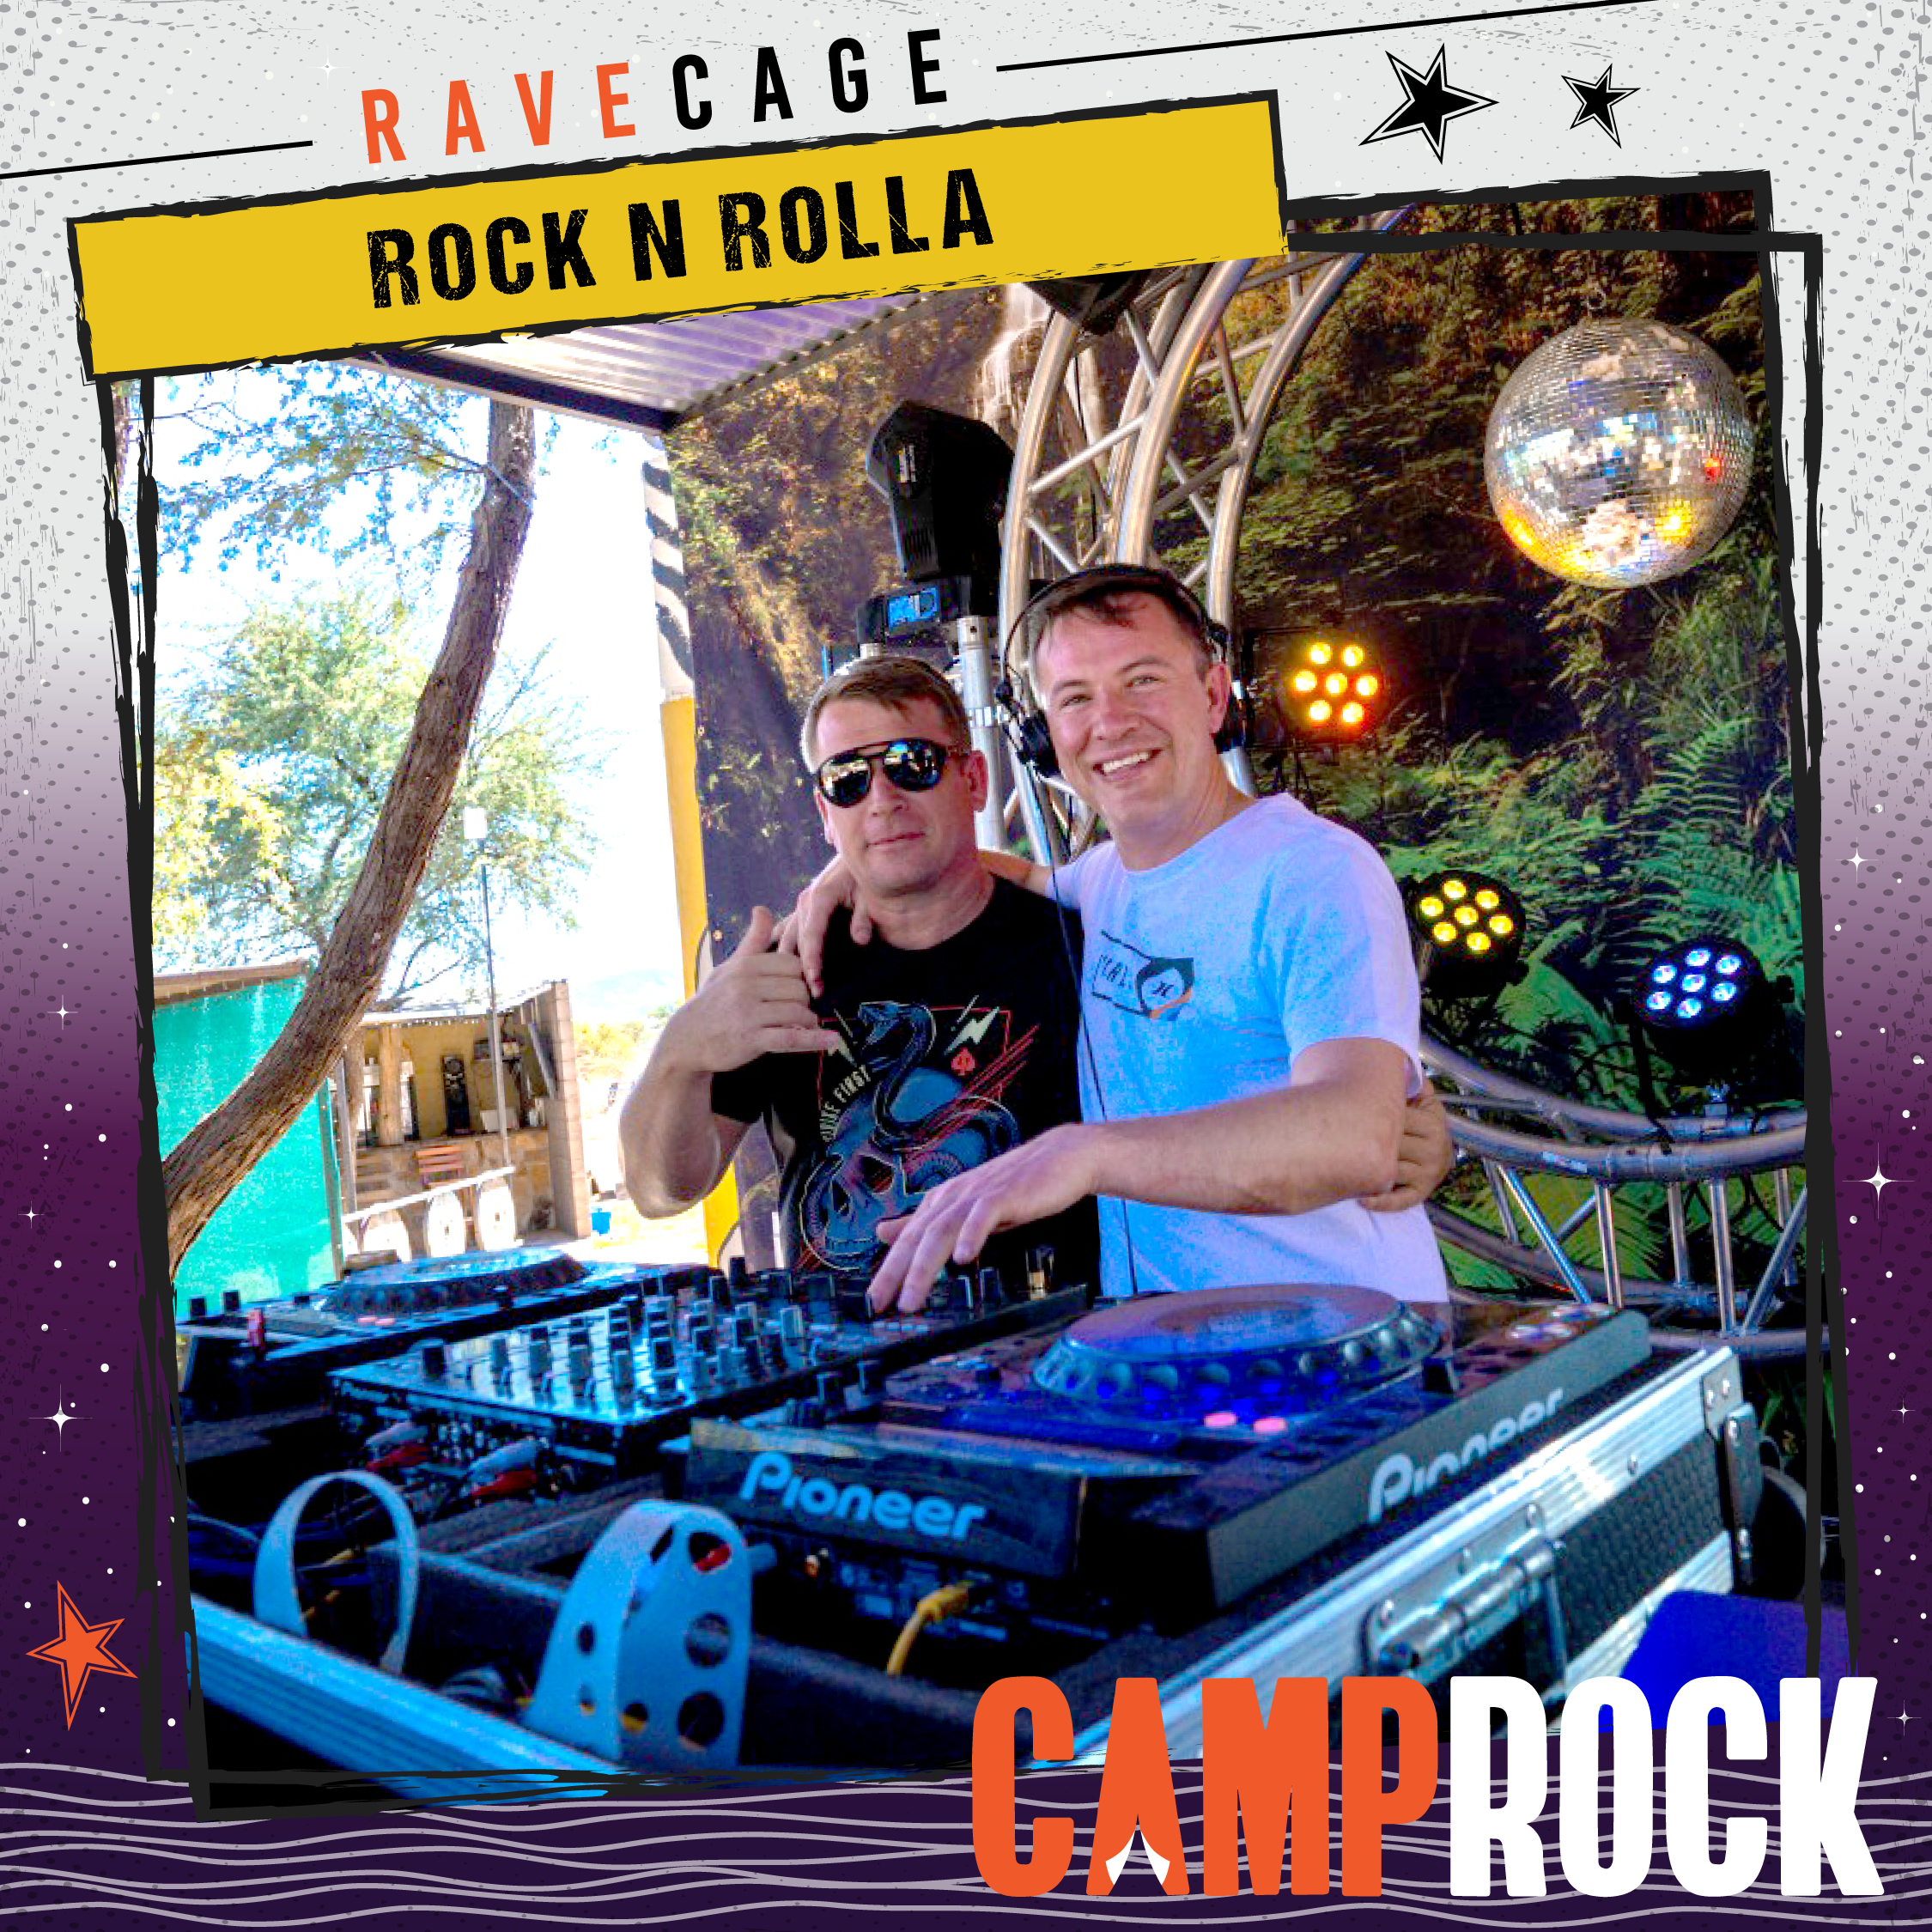 CR24-DJs-Rock-n-Rolla